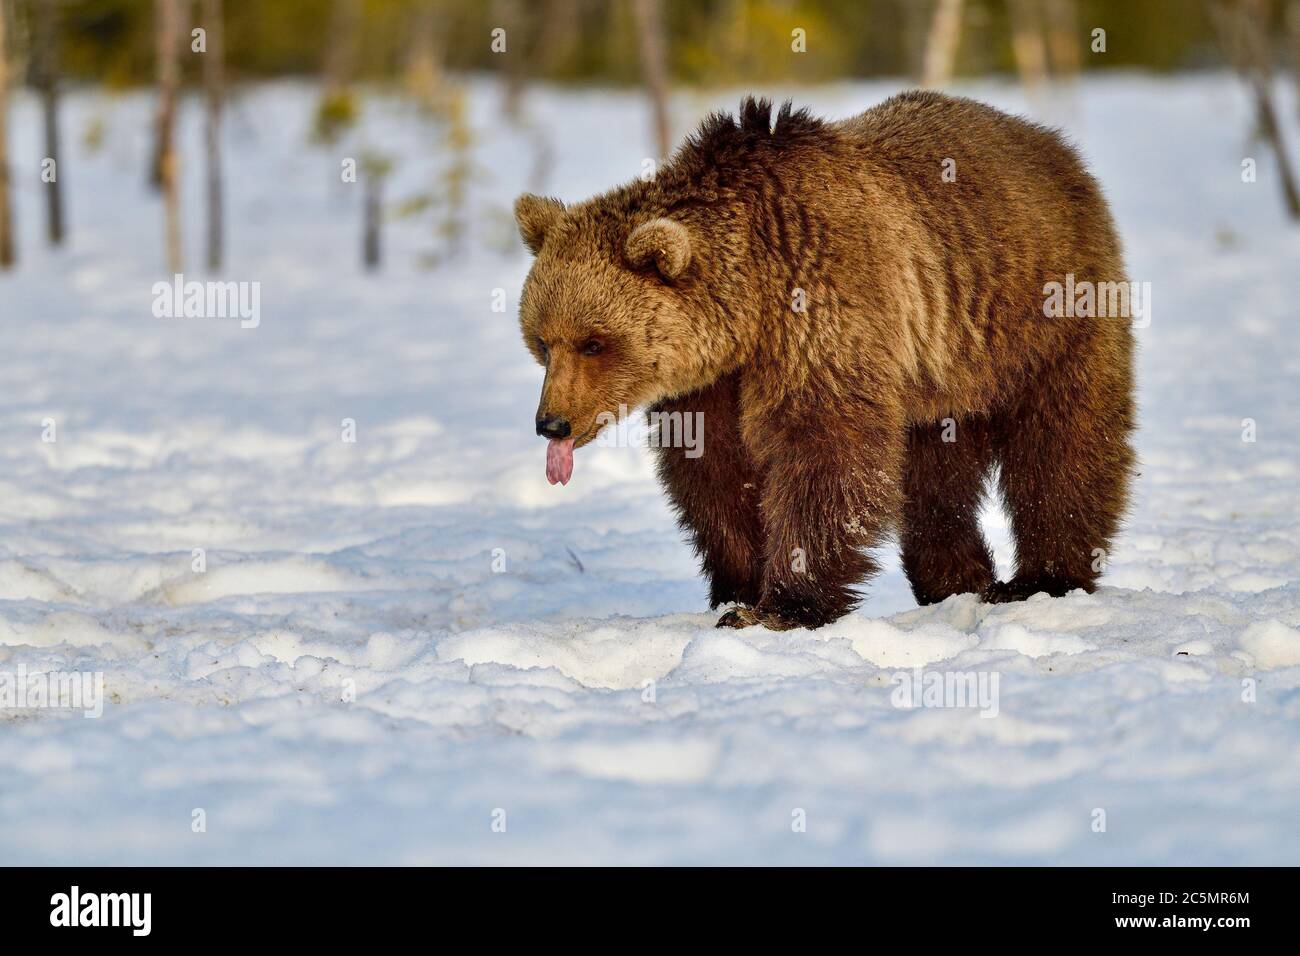 L'ours brun se détend la langue en la tirant Banque D'Images